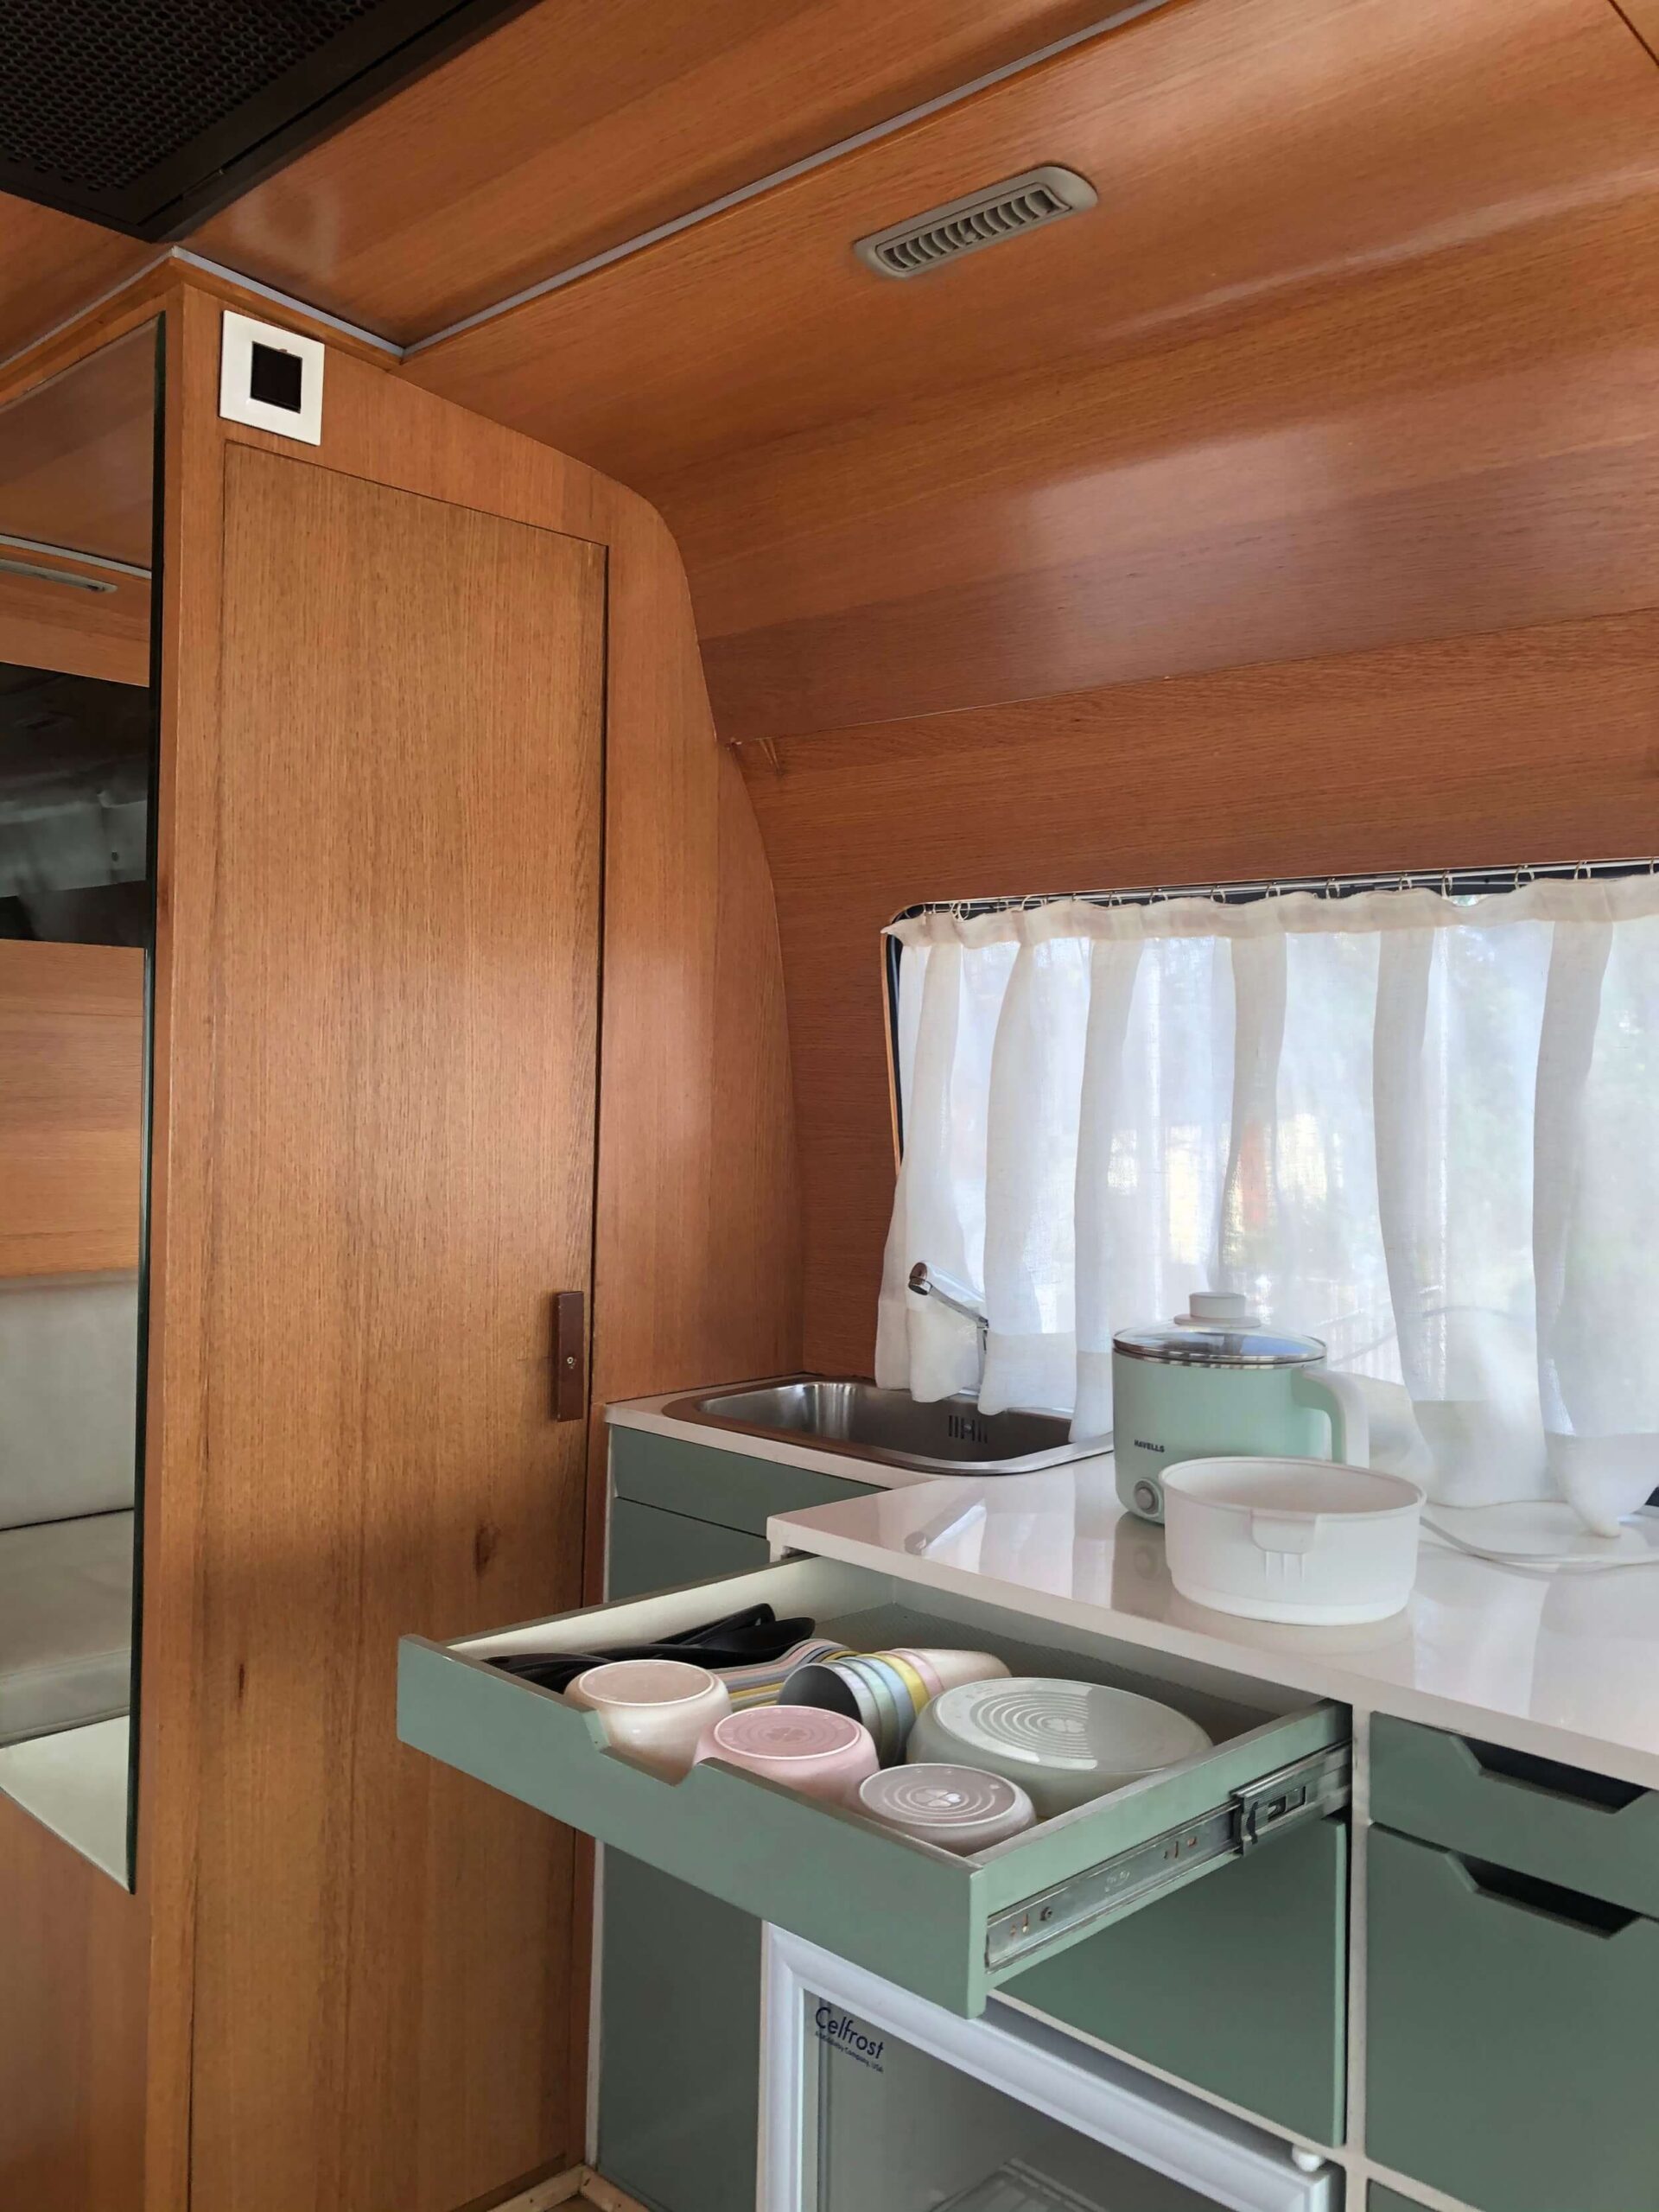 kitchen in caravan